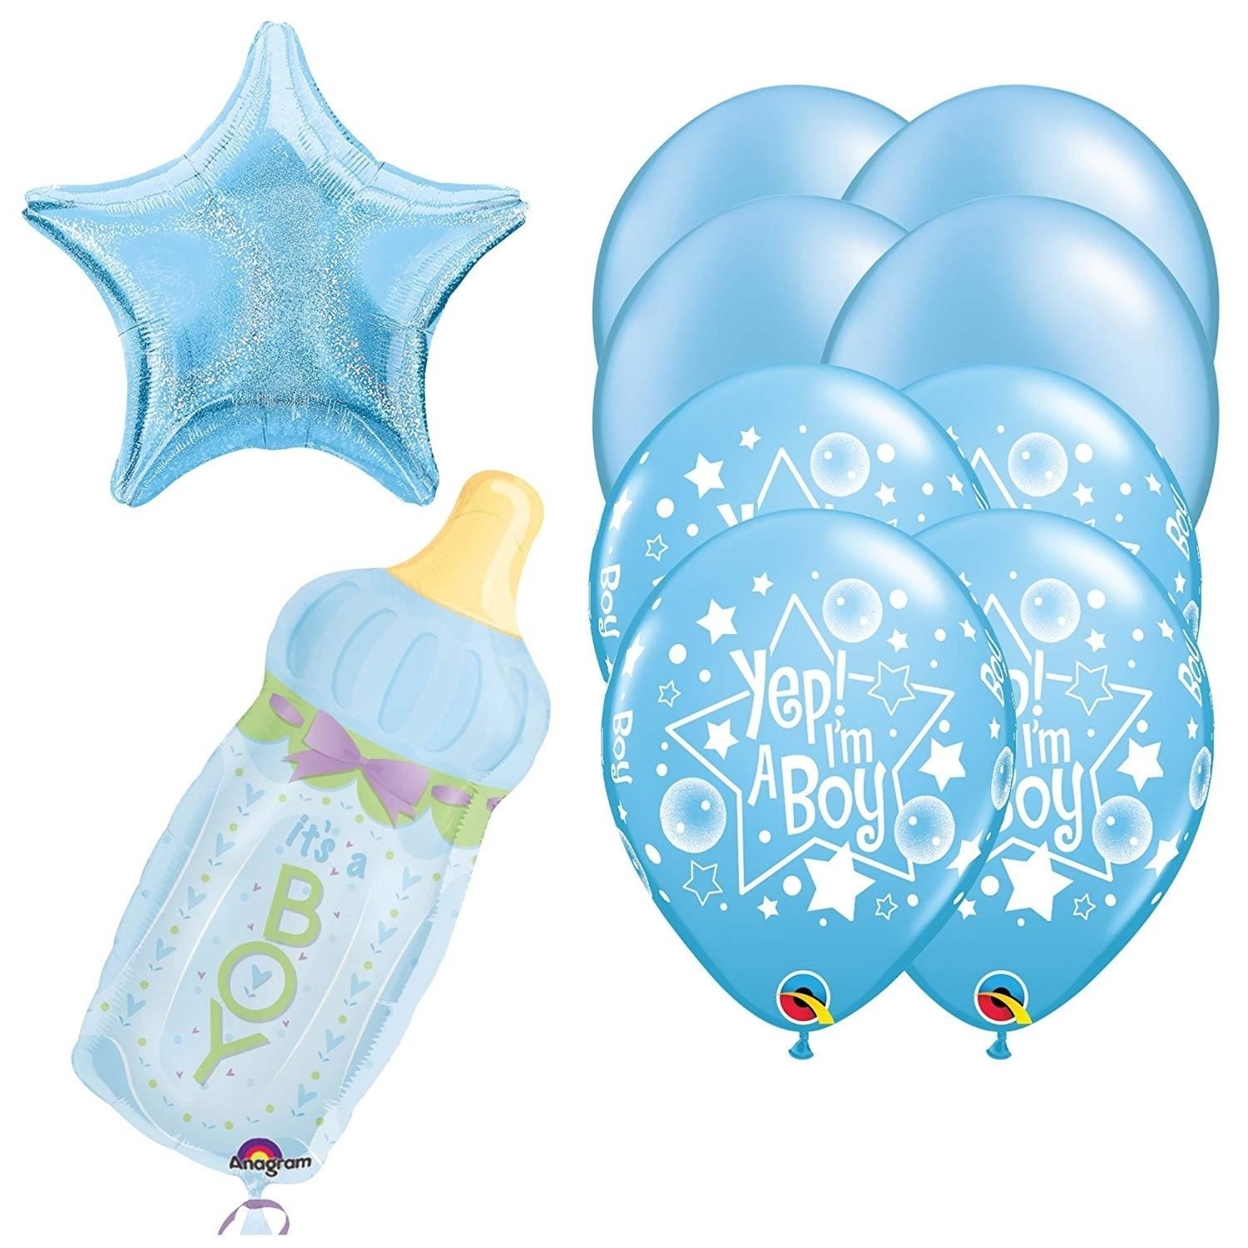 It's A Boy Newborn Baby Balloon Kit 31 Bottle Bouquet Mayflower